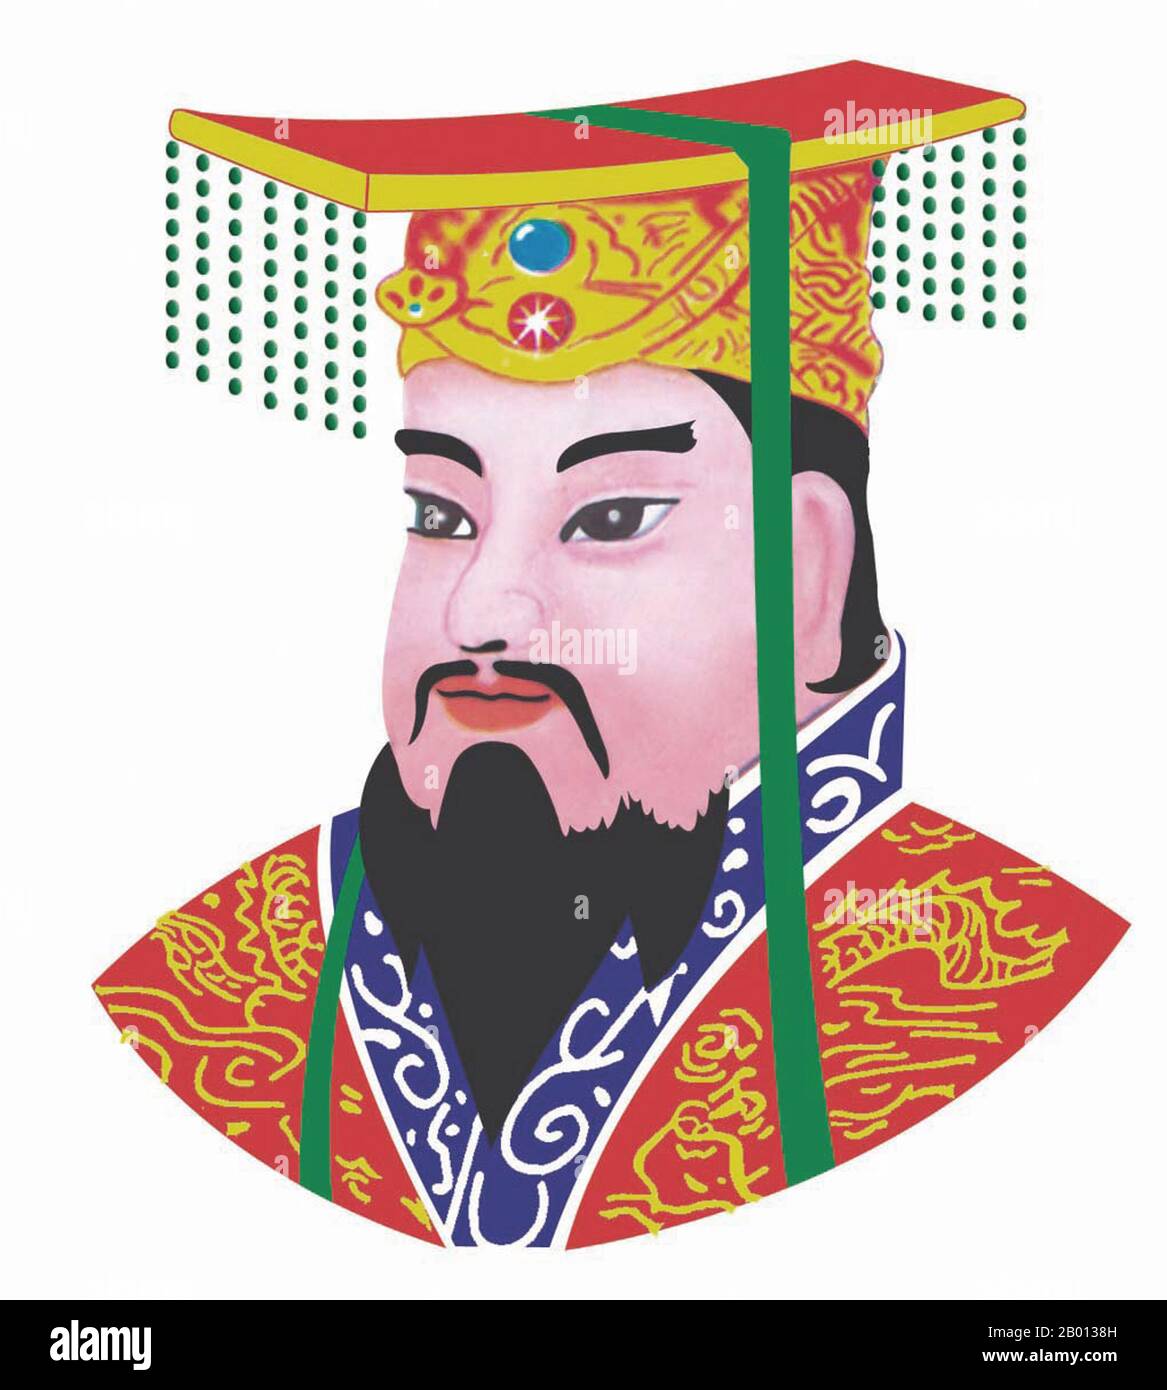 China: Yuhuang Dadi, der 'Jade-Kaiser', höchste Gottheit des Daoismus. Der Jade-Kaiser ist der daoistische Herrscher des Himmels und aller Bereiche der Existenz darunter, einschließlich des Menschen und der Hölle, nach der daoistischen Mythologie. Er ist einer der wichtigsten Götter des chinesischen traditionellen Religions-Pantheons. Nach daoistischem Glauben regiert der Jade-Kaiser das ganze Reich der Menschen und darunter, aber er steht unter den drei Reinen. Stockfoto